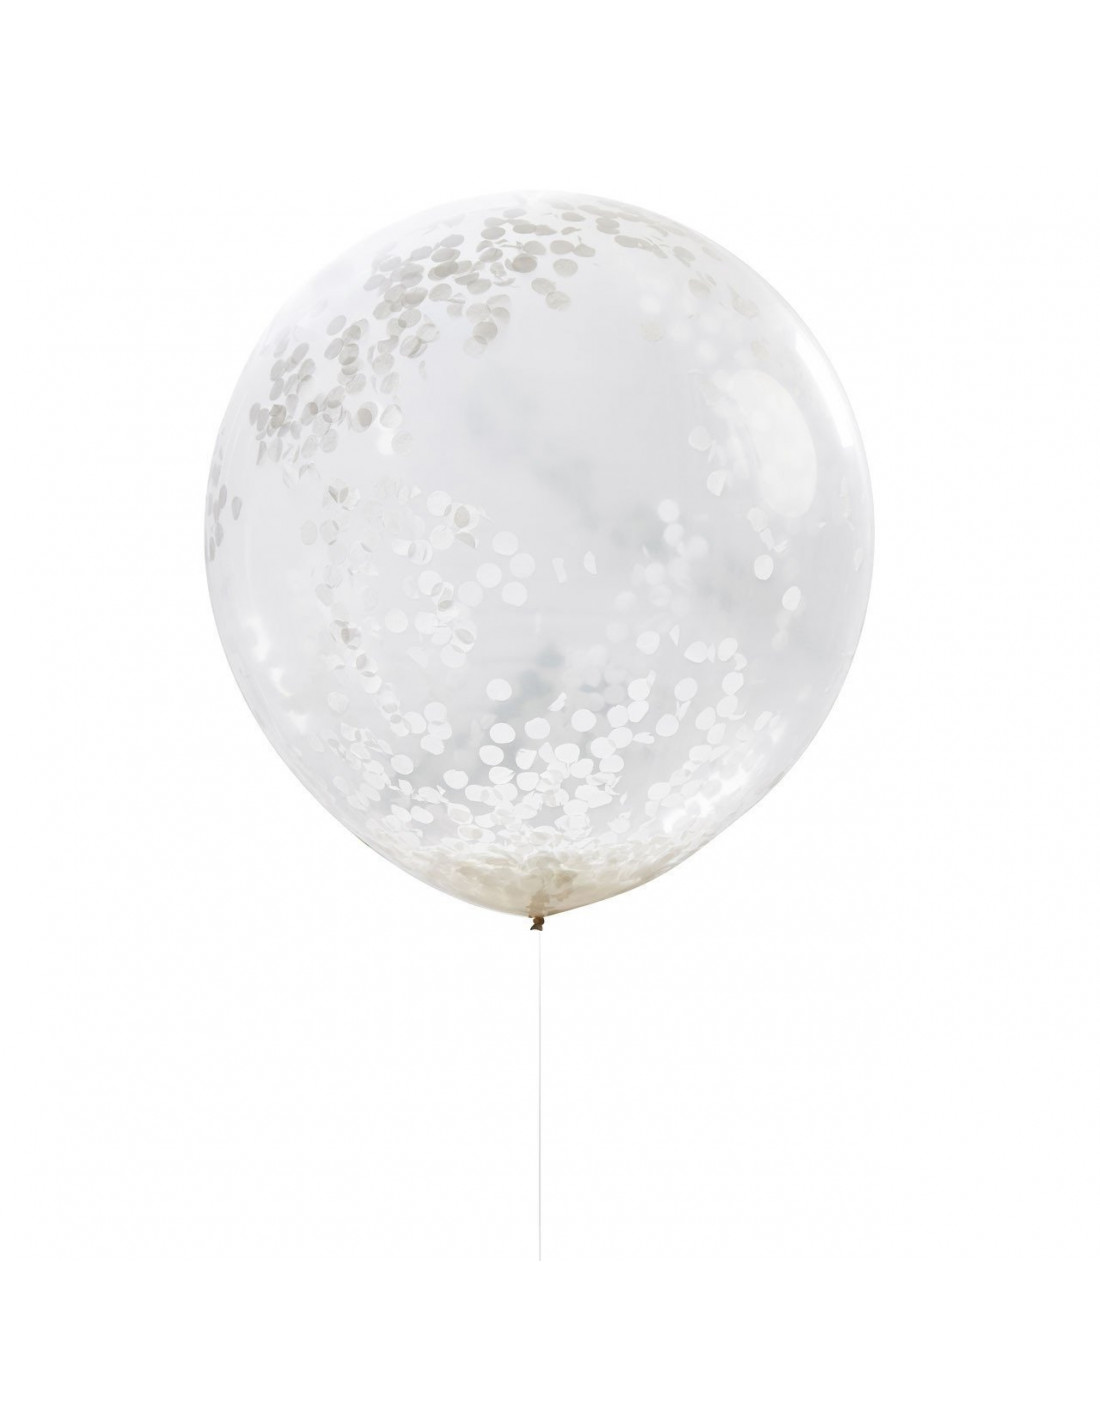 3 Ballons Géants Transparents avec Confettis Blancs à l'Intérieur - Les  Bambetises